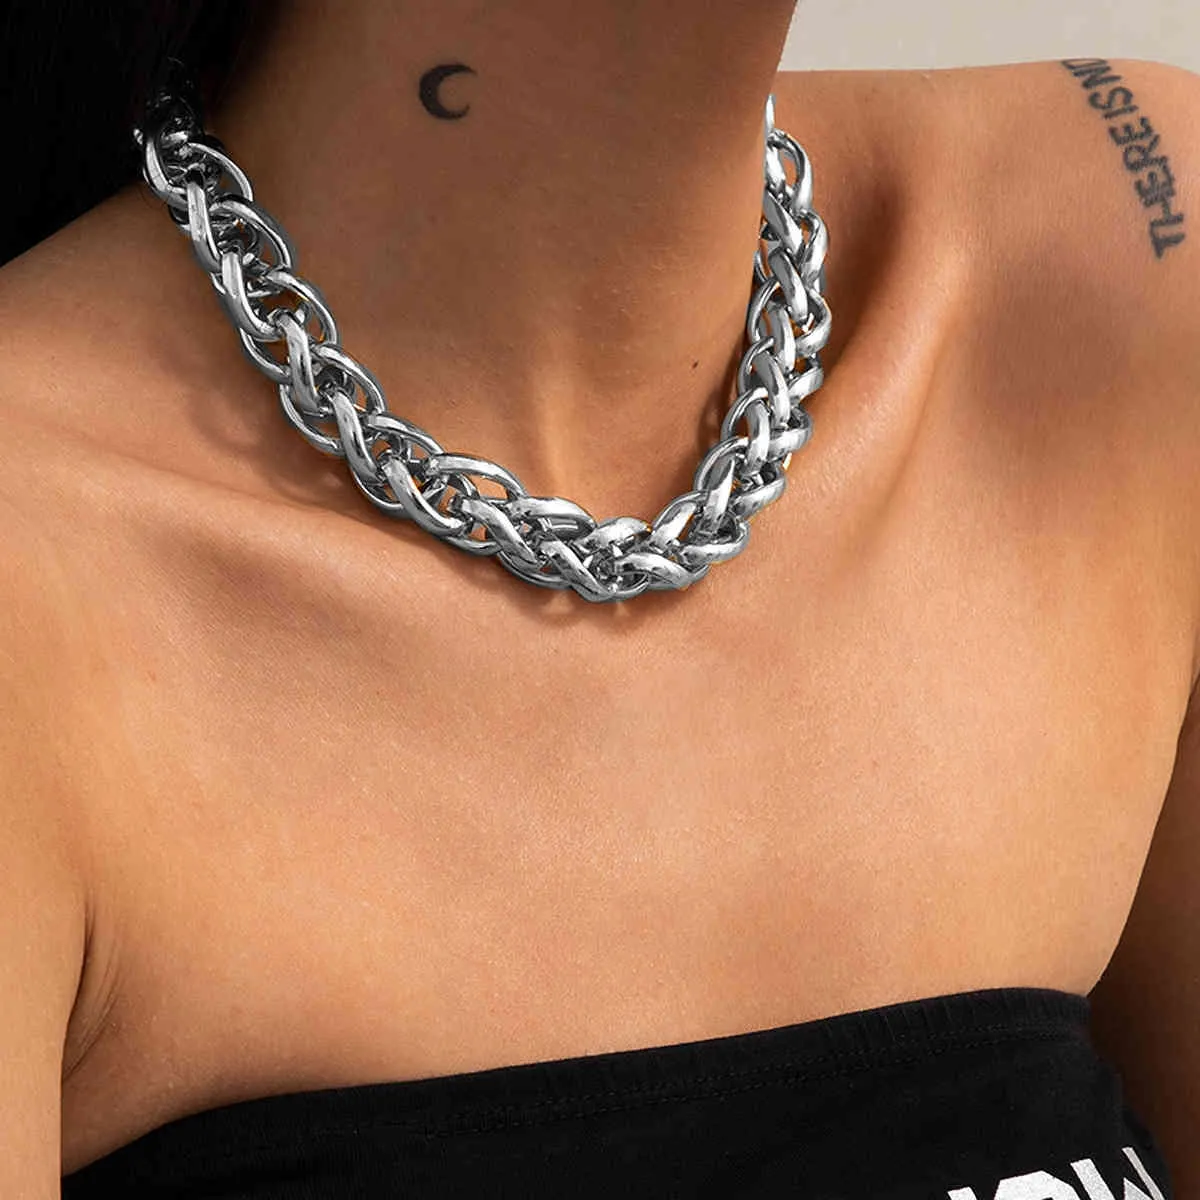 Europäischen Und Amerikanischen Metall Kalten Wind Schmuck Mit Punk Retro Woven Twist Dicke Kette Halskette Für Weibliche Party Geschenke Großhandel